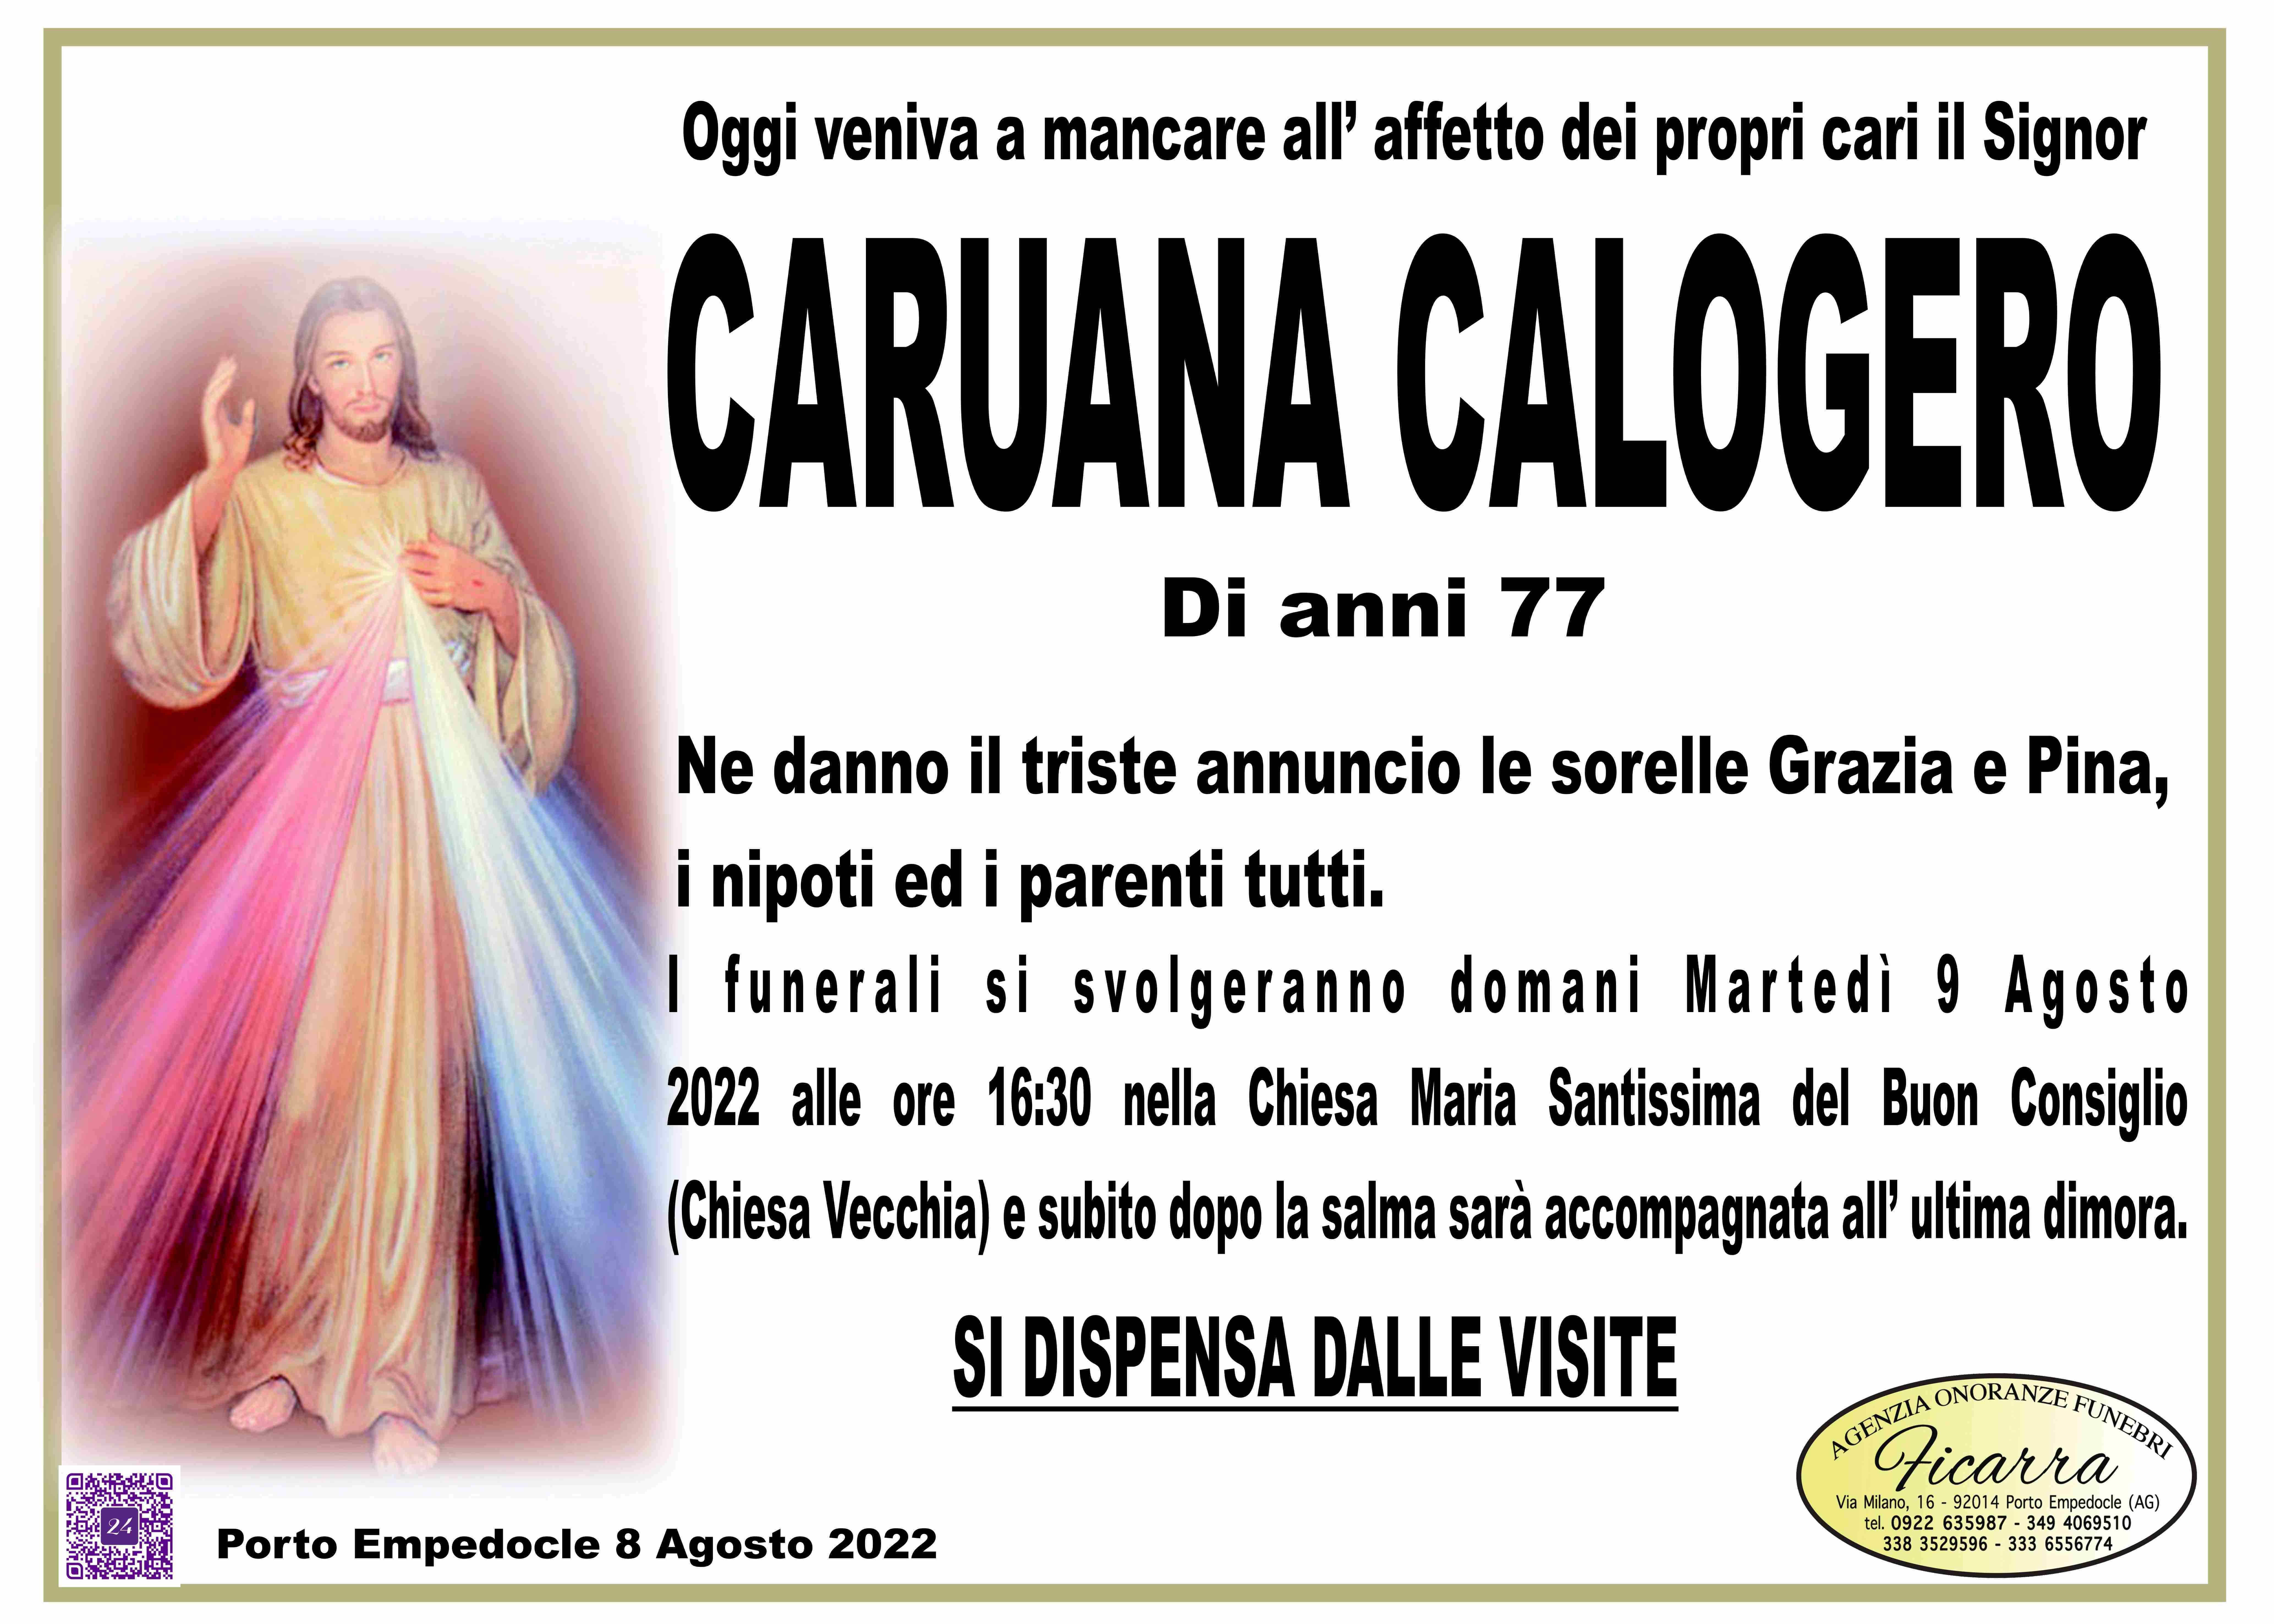 Calogero Caruana